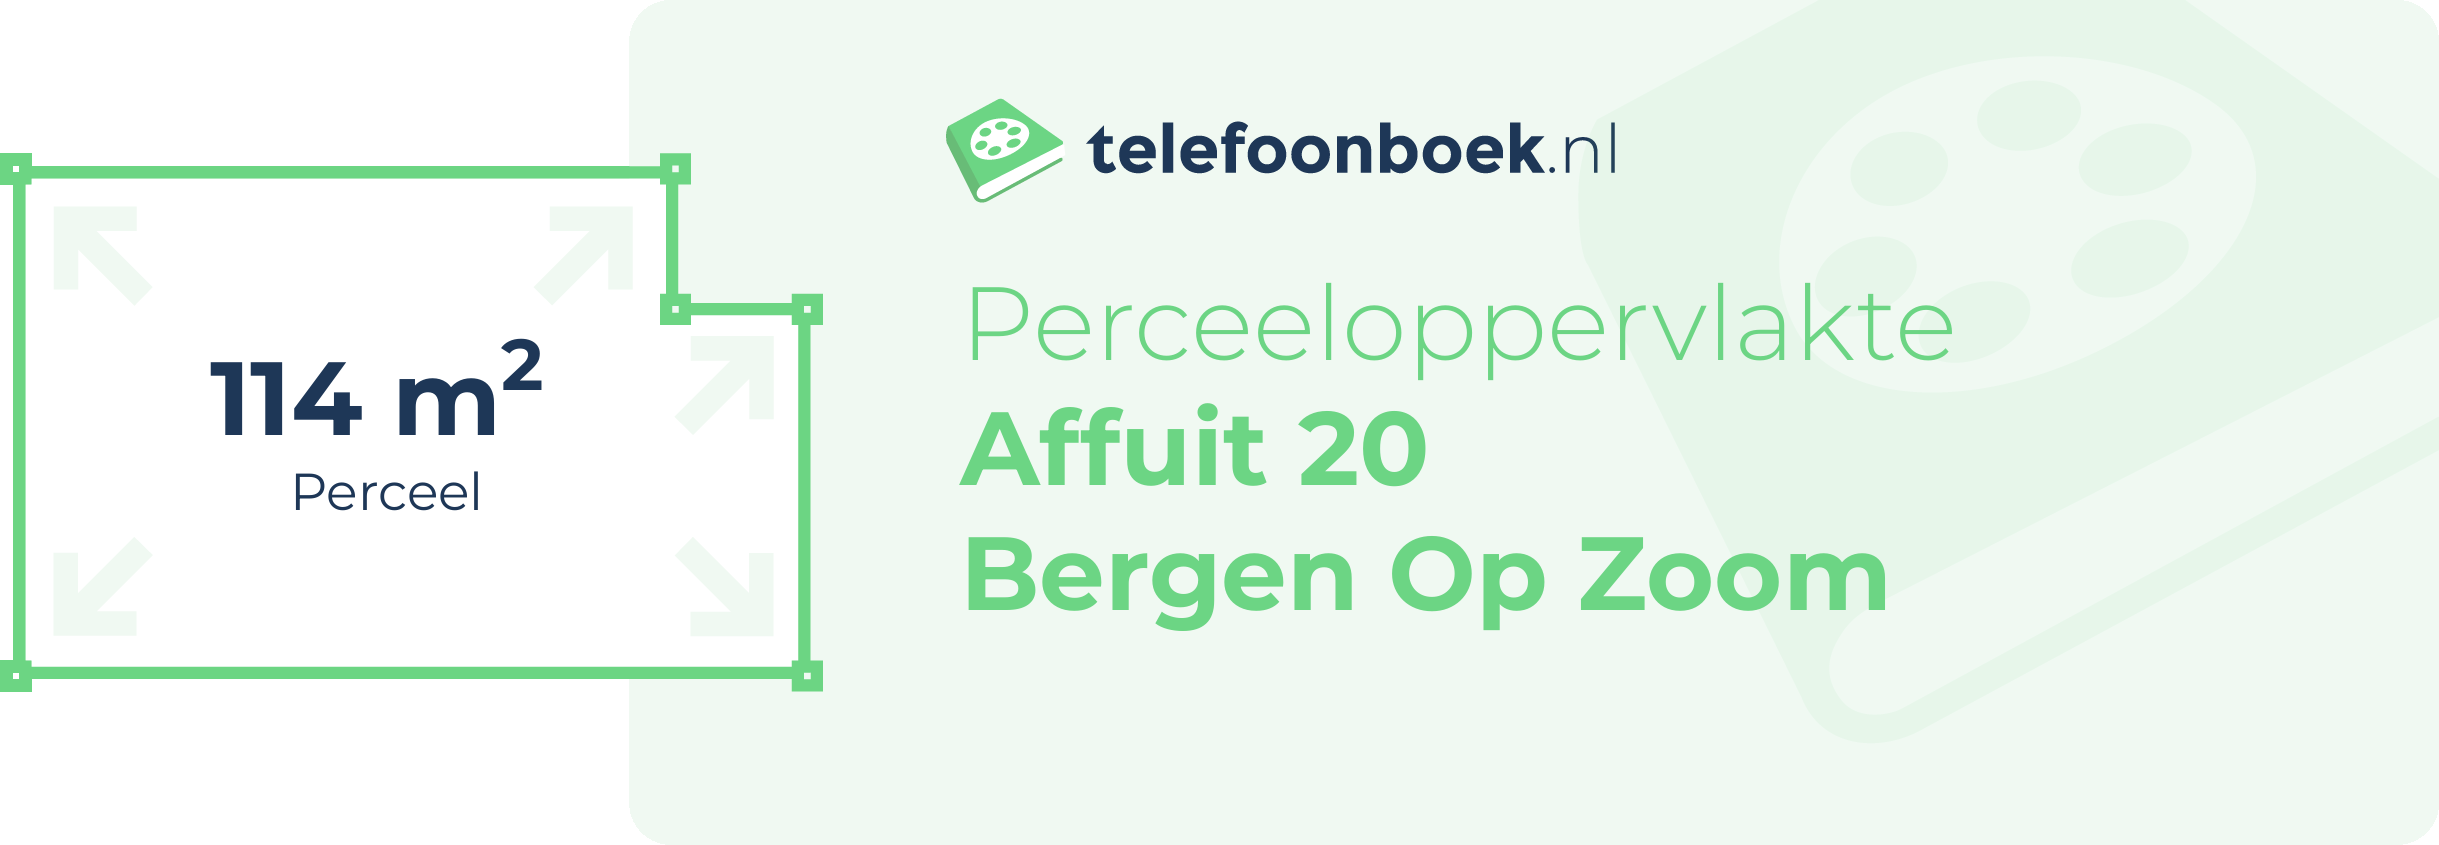 Perceeloppervlakte Affuit 20 Bergen Op Zoom